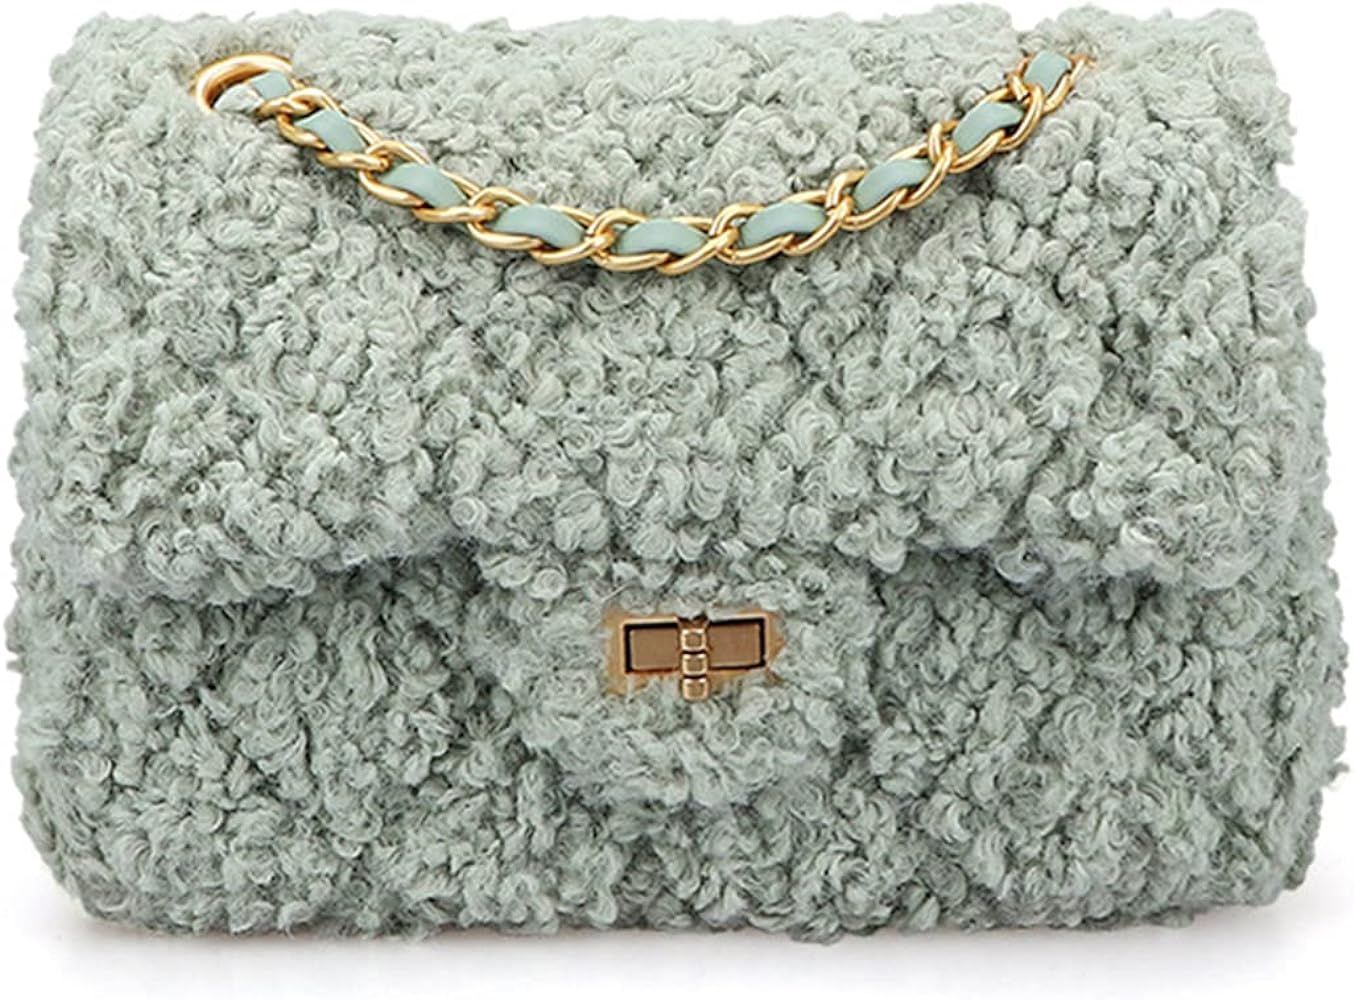 Women Plush Shoulder Bag Fashion Fluffy Crossbody Purse Soft Warm Shopping Dating Bag with Adjustabl | Amazon (US)